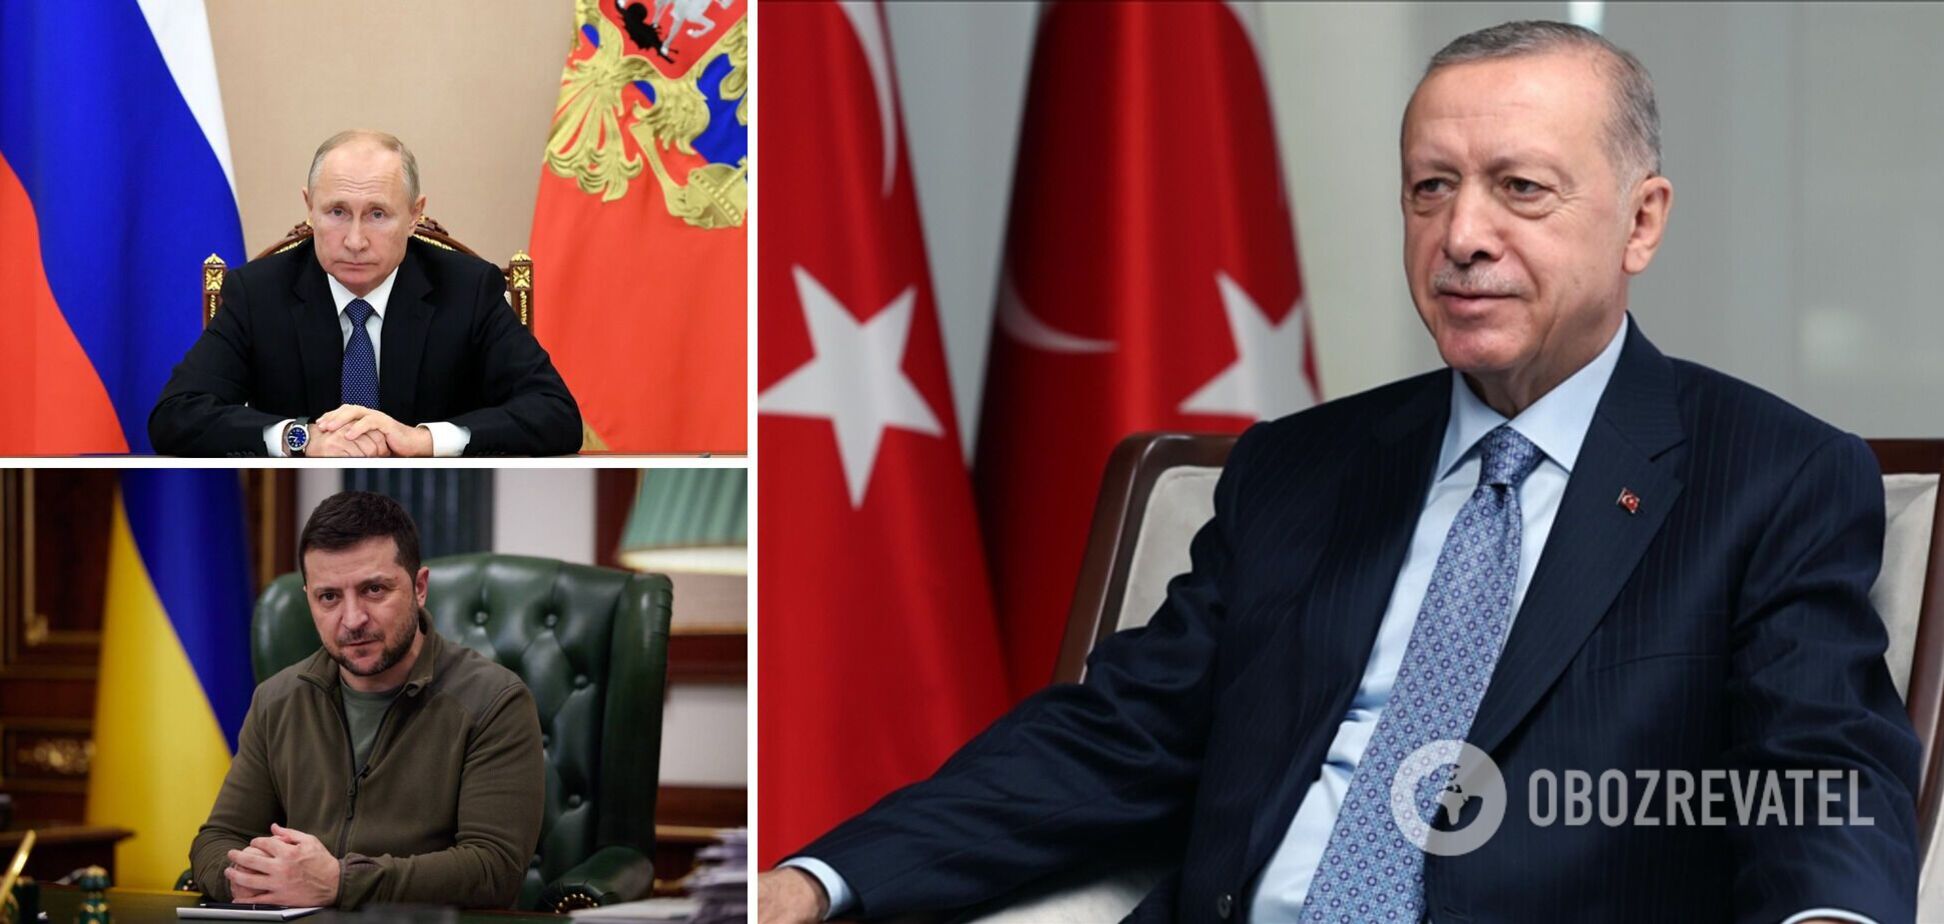 Зеленський і Путін можуть відвідати Туреччину після інавгурації Ердогана, ключовими будуть два питання – ЗМІ